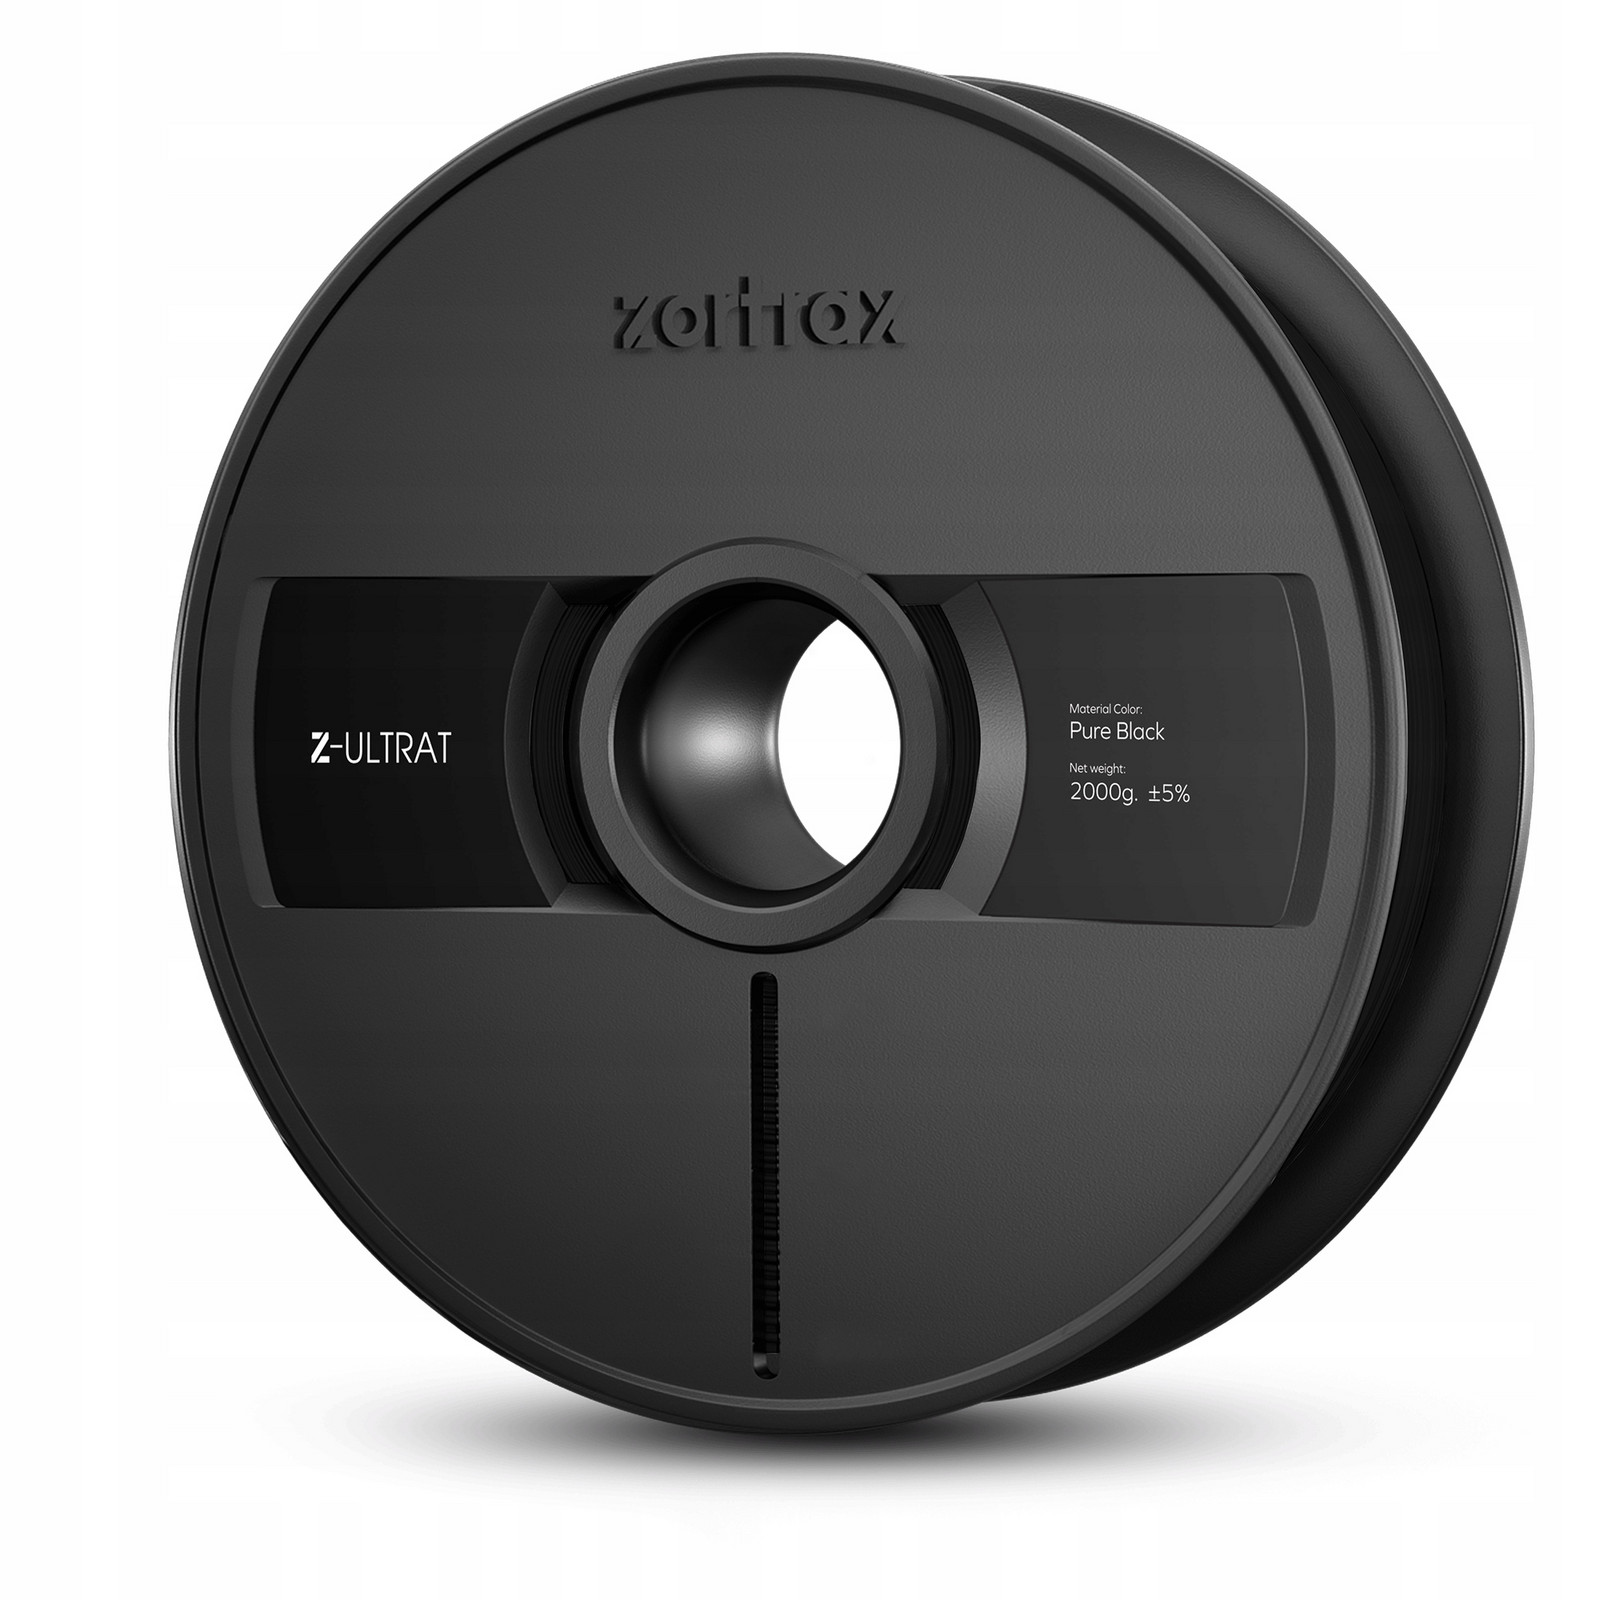 Filament Zortrax Z-Ultrat 1,75mm Black/Pure Black 2000g